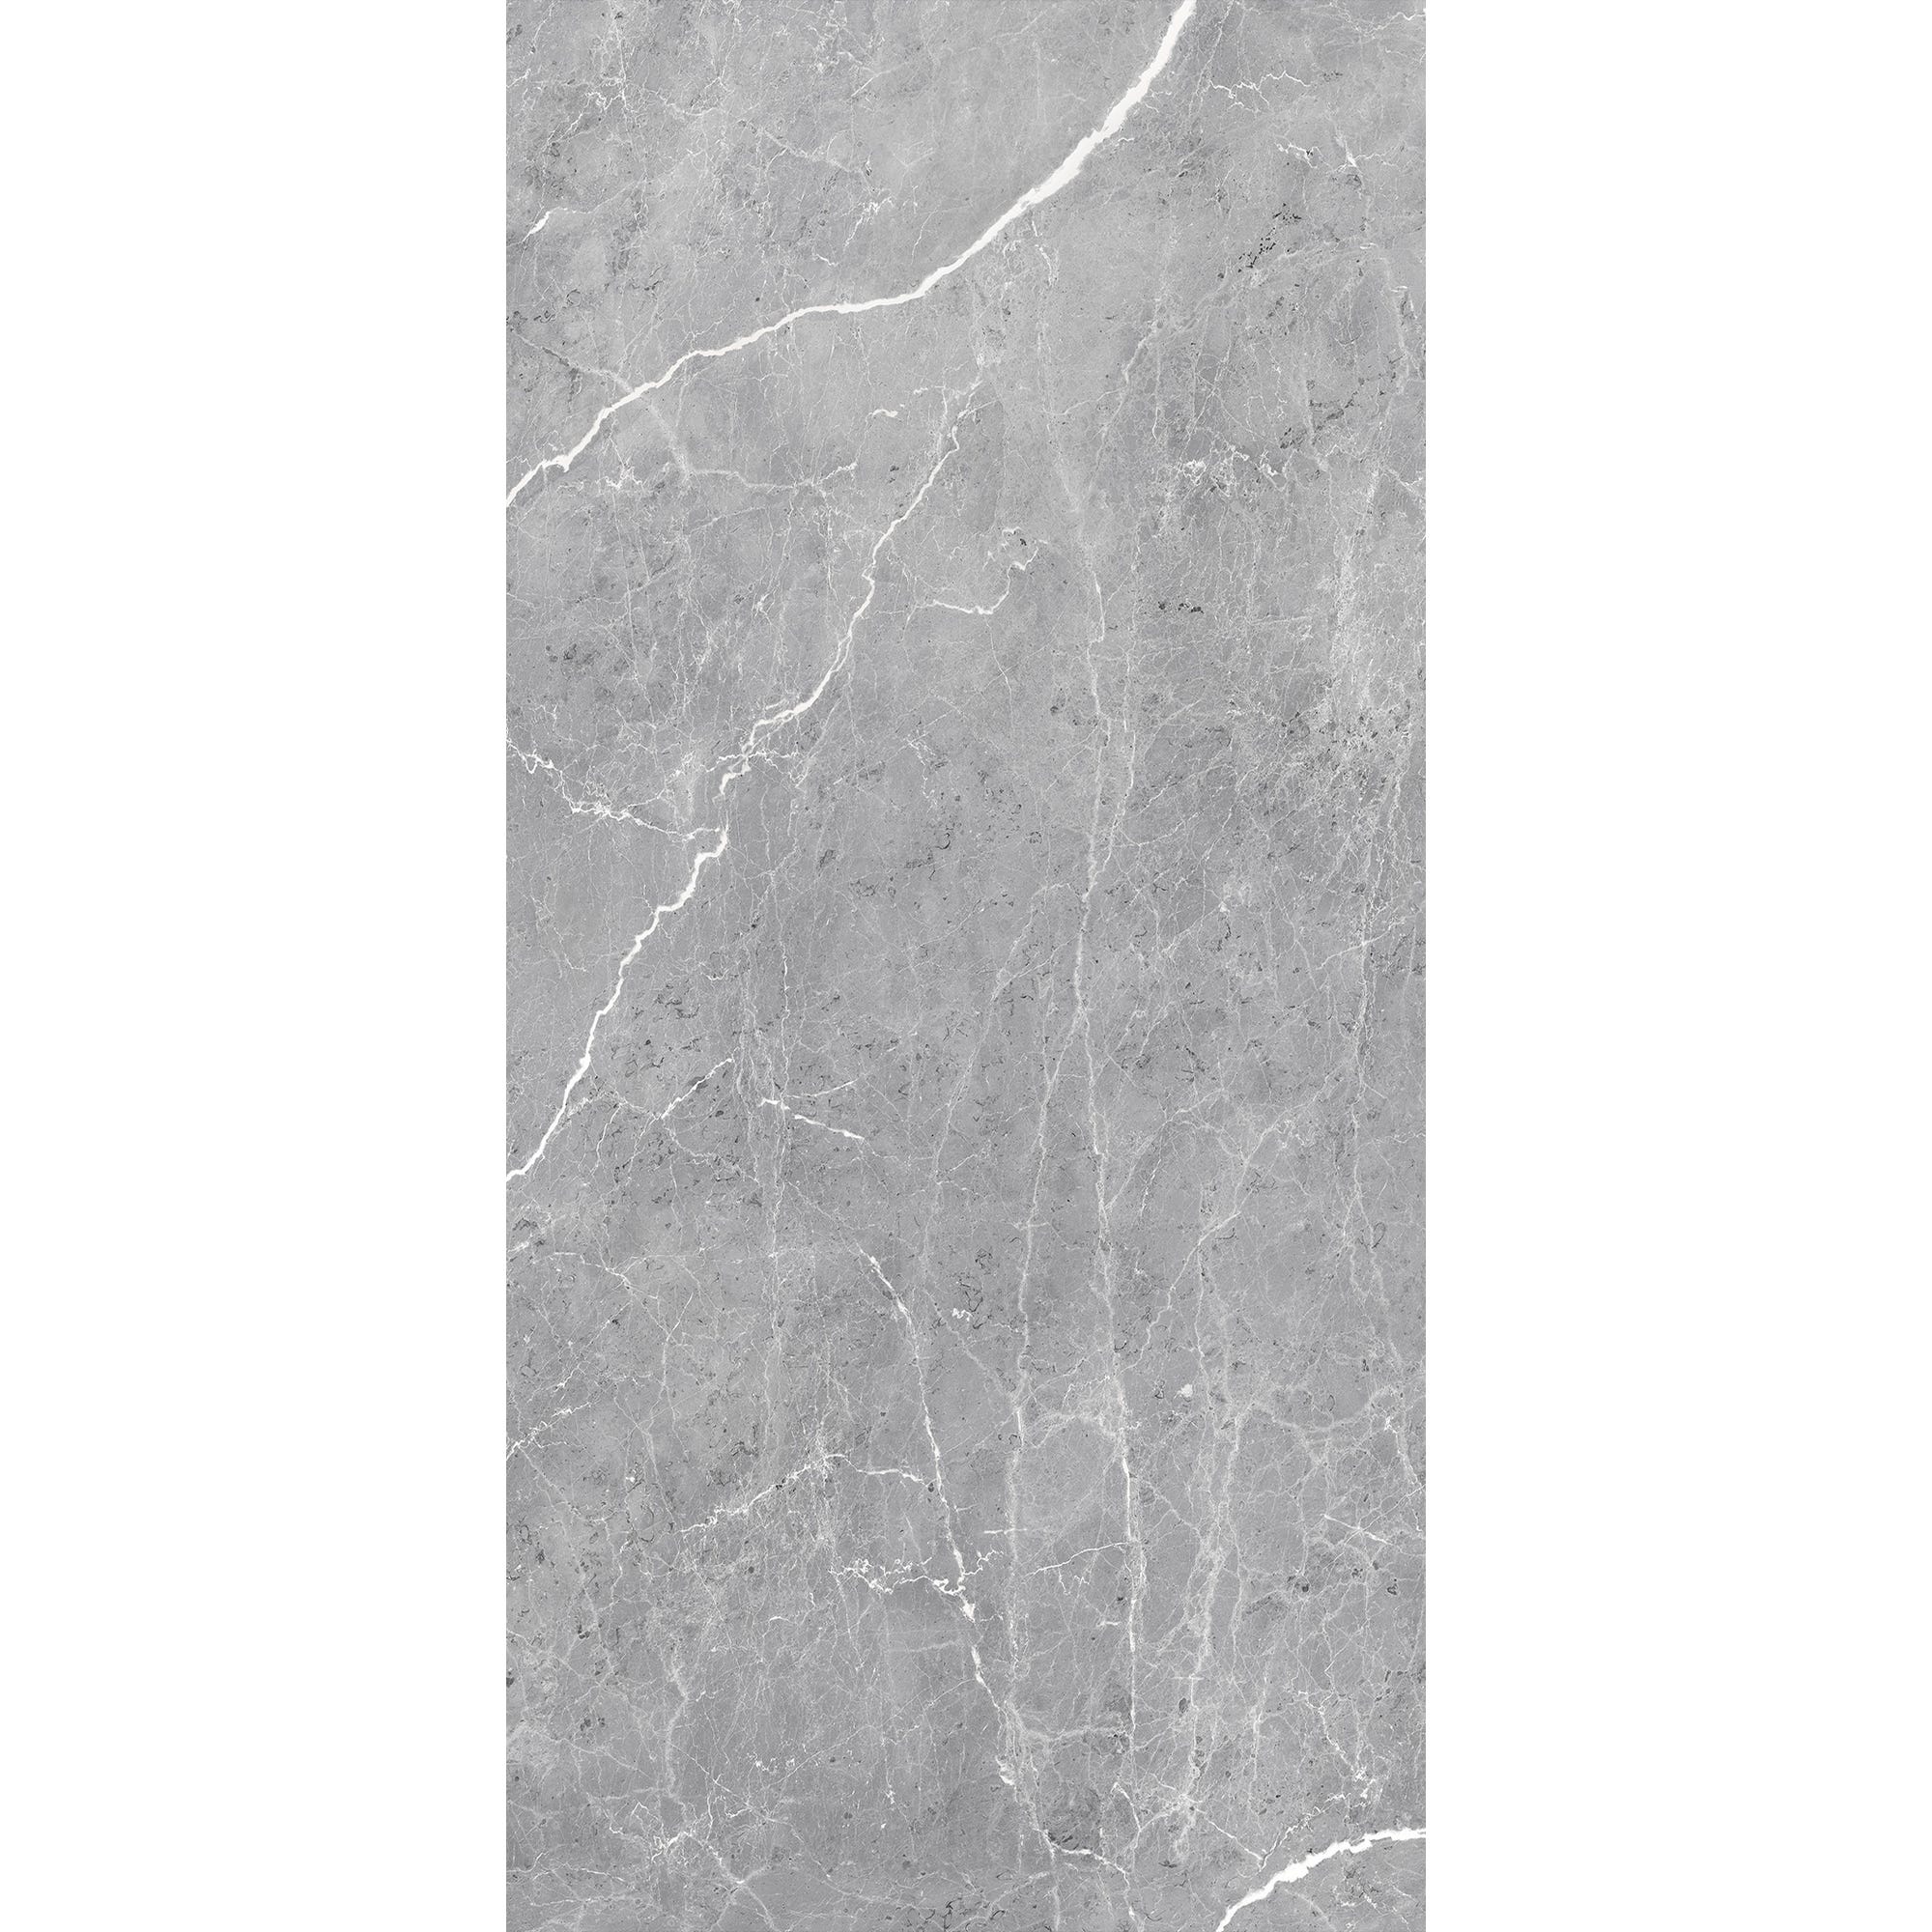 Schulte Panneau mural Marbre gris profond, revêtement pour douche et salle de bain, DécoDesign SOFTTOUCH, 100 x 210 cm 1